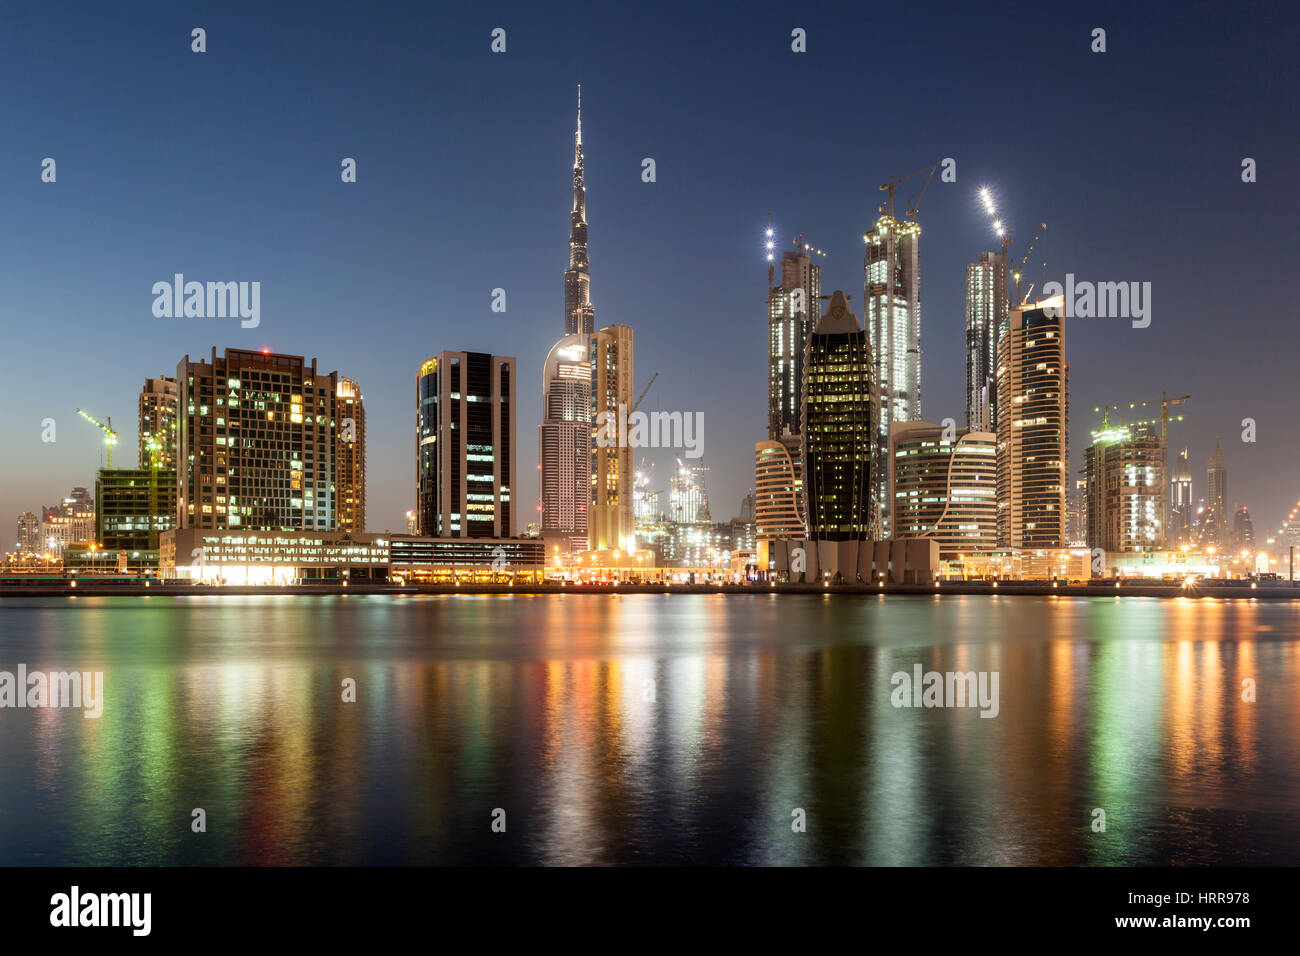 DUBAI, UAE - NOV 27, 2016: The Dubai Business Bay skyline illuminated at night. United Arab Emirates, Middle East Stock Photo